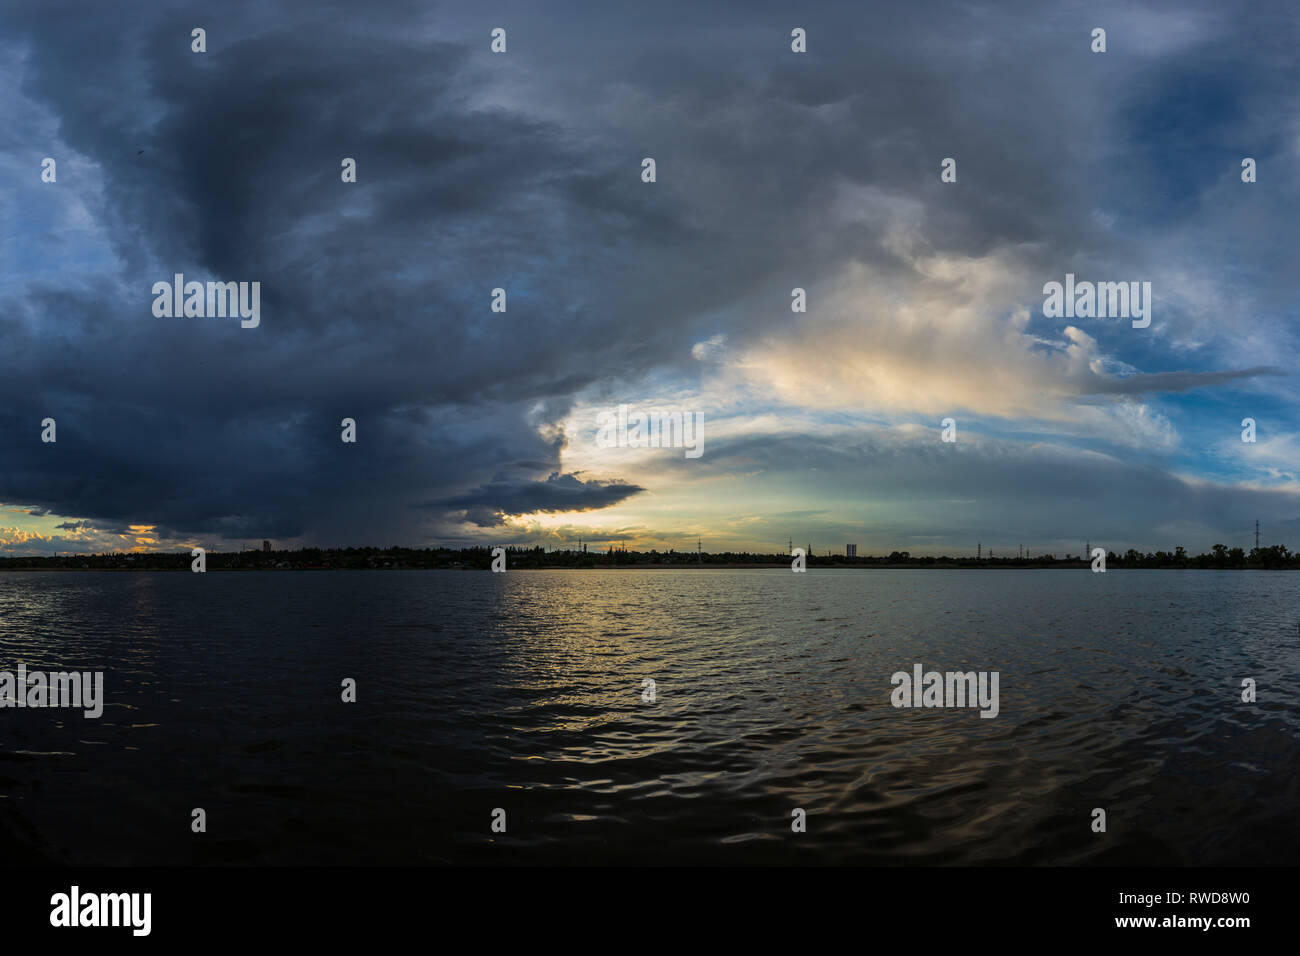 Epische dunkel bewölkt Landschaft mit Gewitterwolken über den See, die Sonne Licht hervorgehoben, Fluss in Kriviy Rih, Dnipropetrovsk region, Ukraine Stockfoto